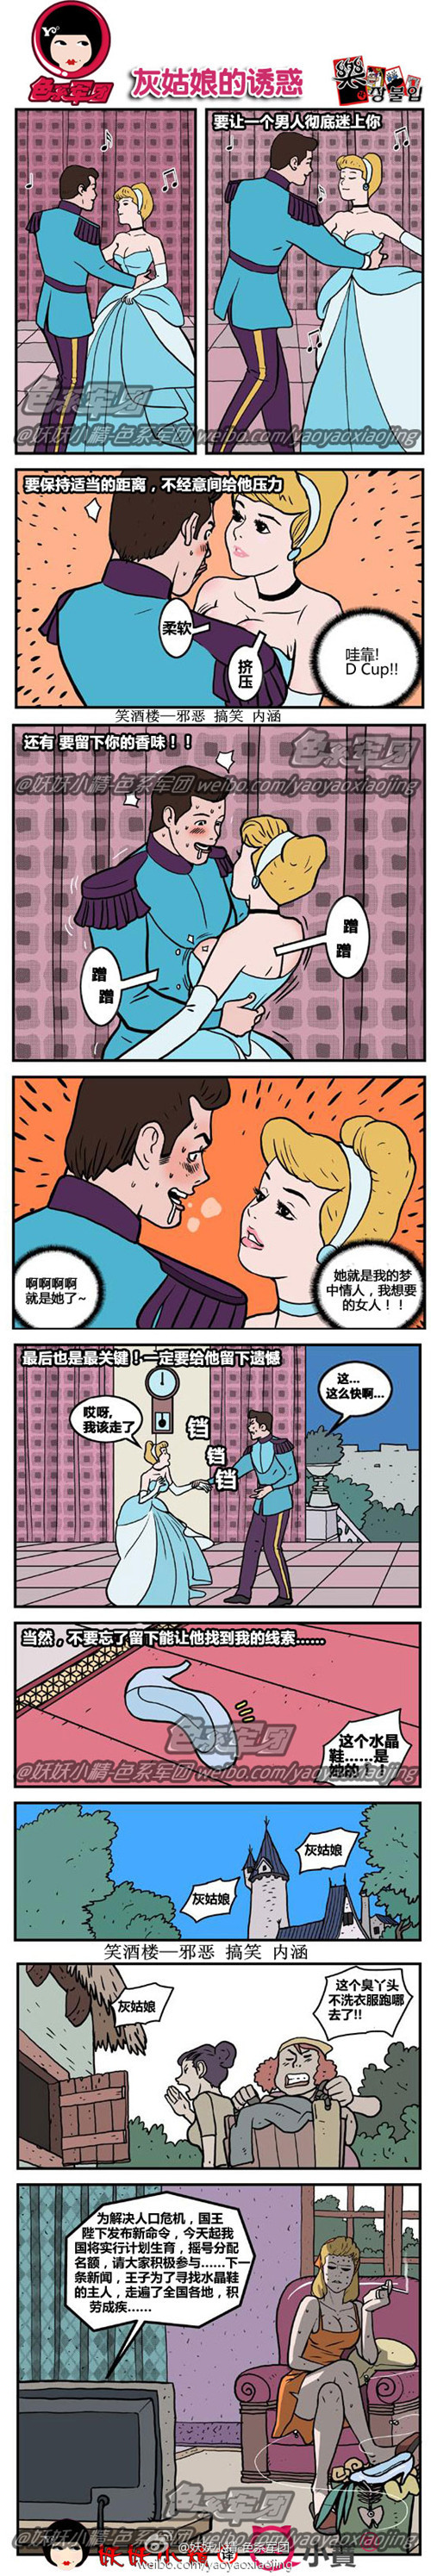 韩国内涵漫画|灰姑娘的诱惑